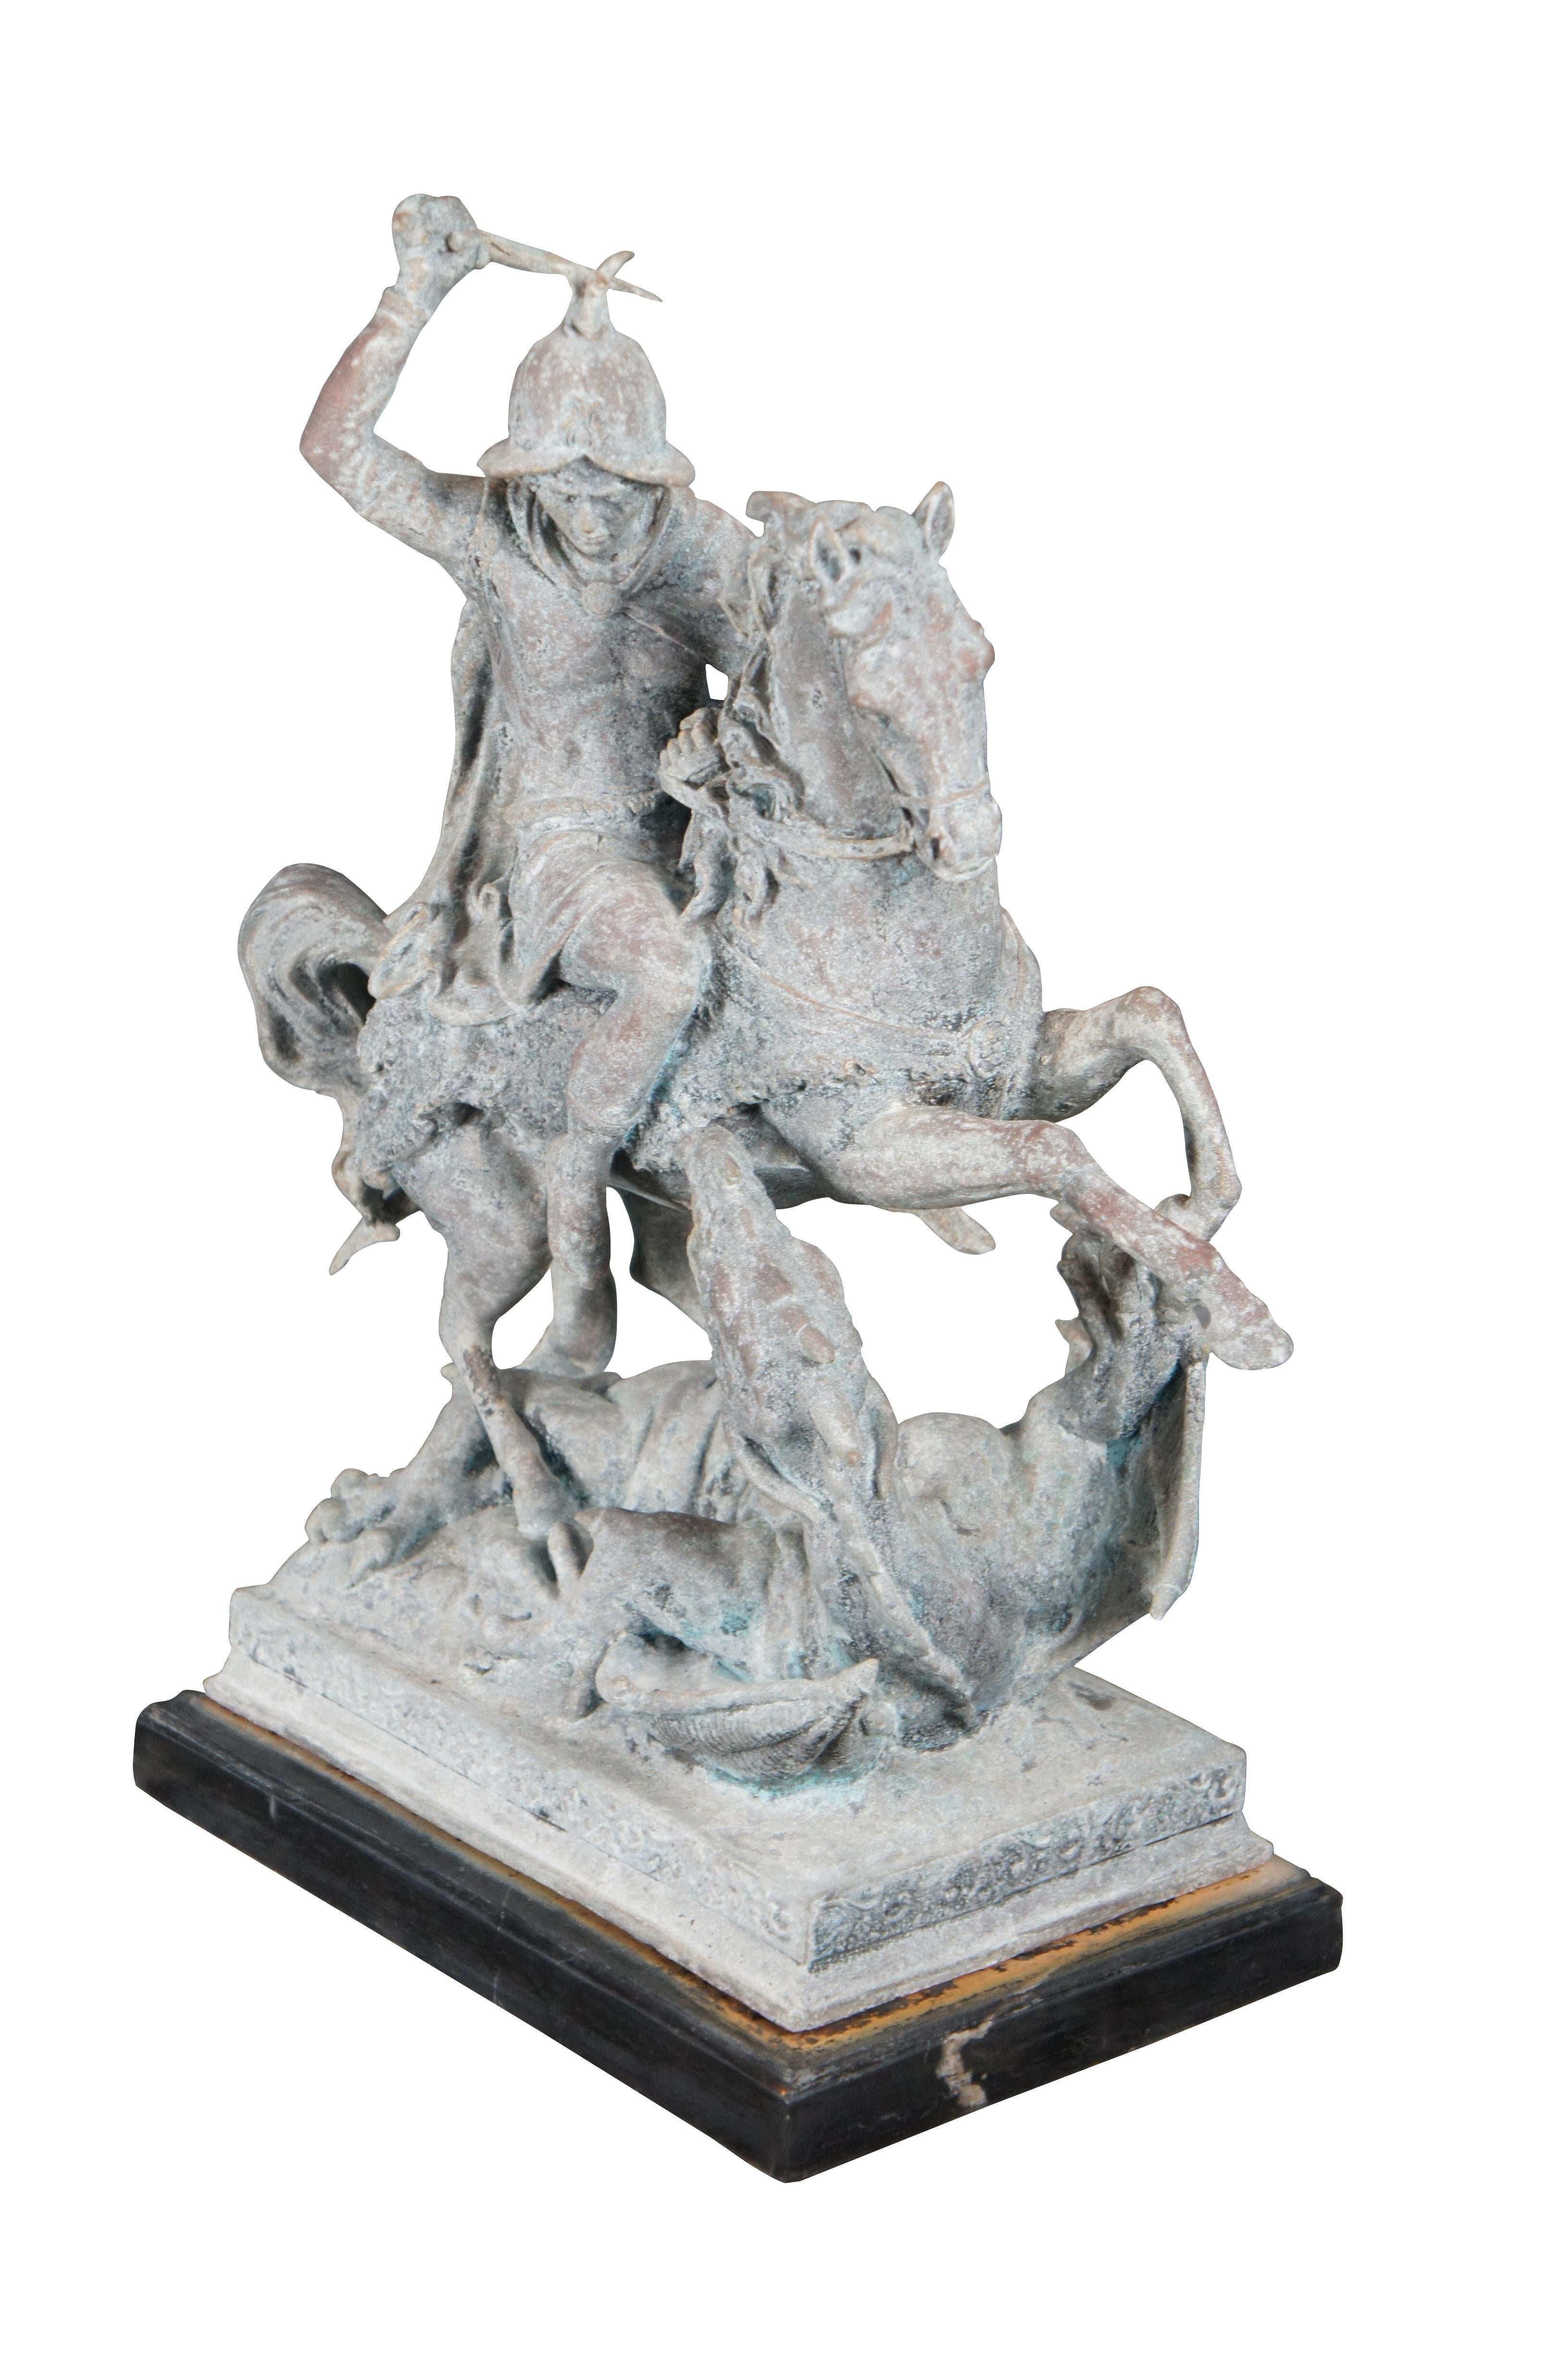 Eine figurale Skulptur des Heiligen Georg und des Drachen, nach Antoine Louis Barye. Der Legende nach besiegt der Heilige Georg - ein im Christentum verehrter Soldat - einen Drachen. Die Geschichte besagt, dass der Drache ursprünglich Tribut von den